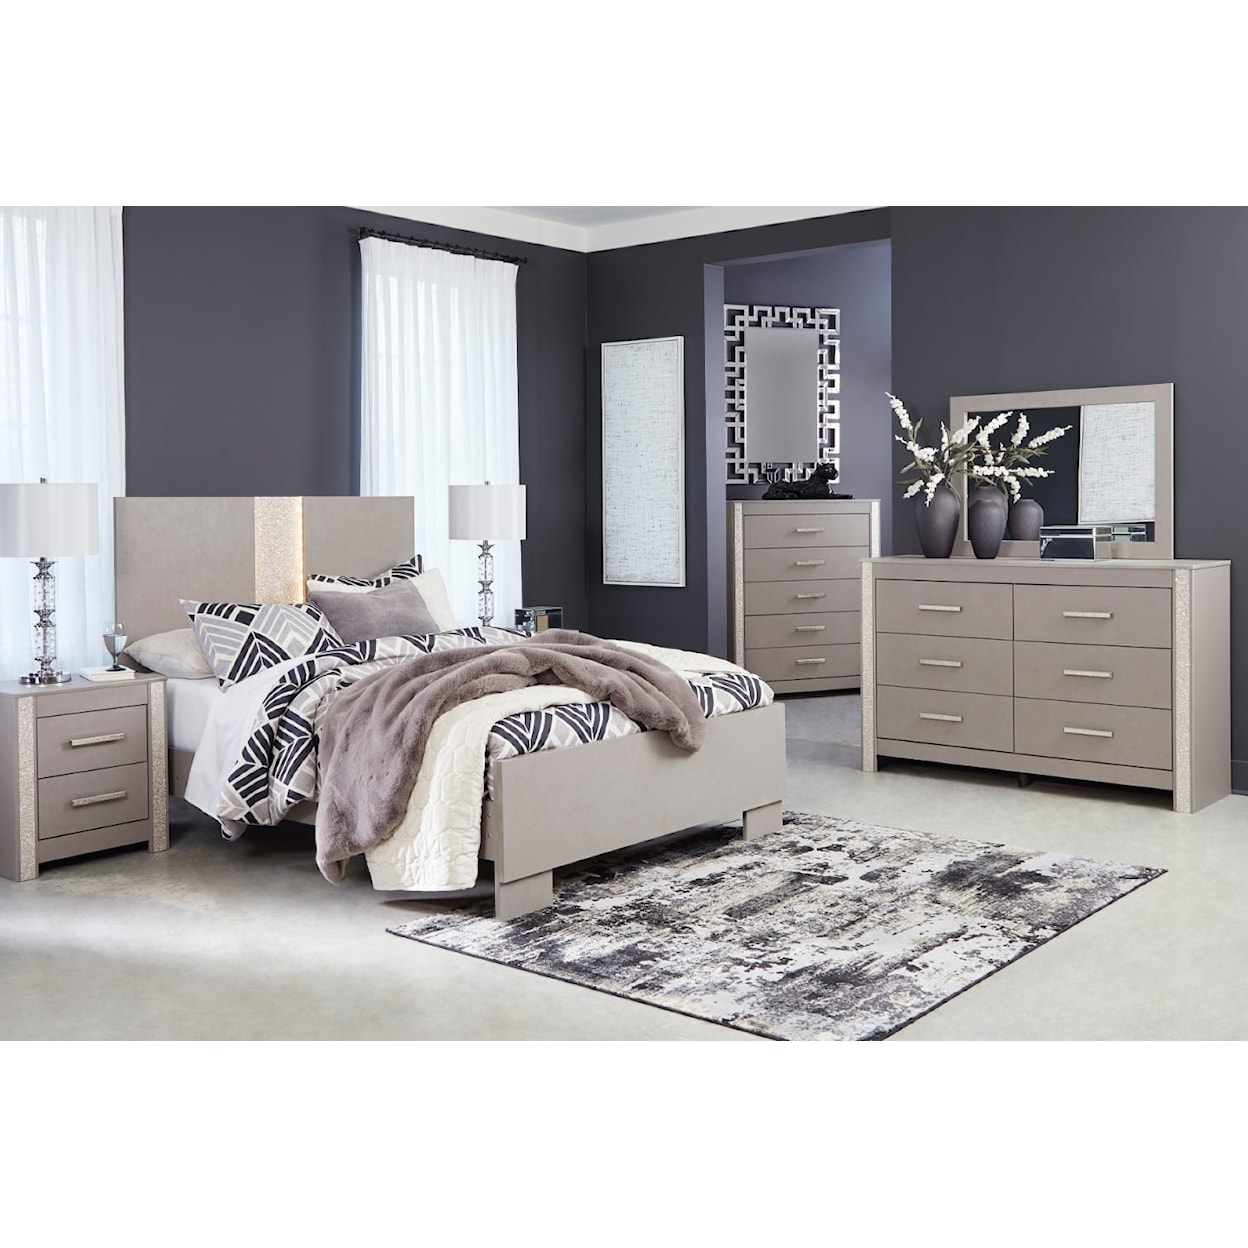 Ashley Furniture Signature Design Surancha Queen Bedroom Set